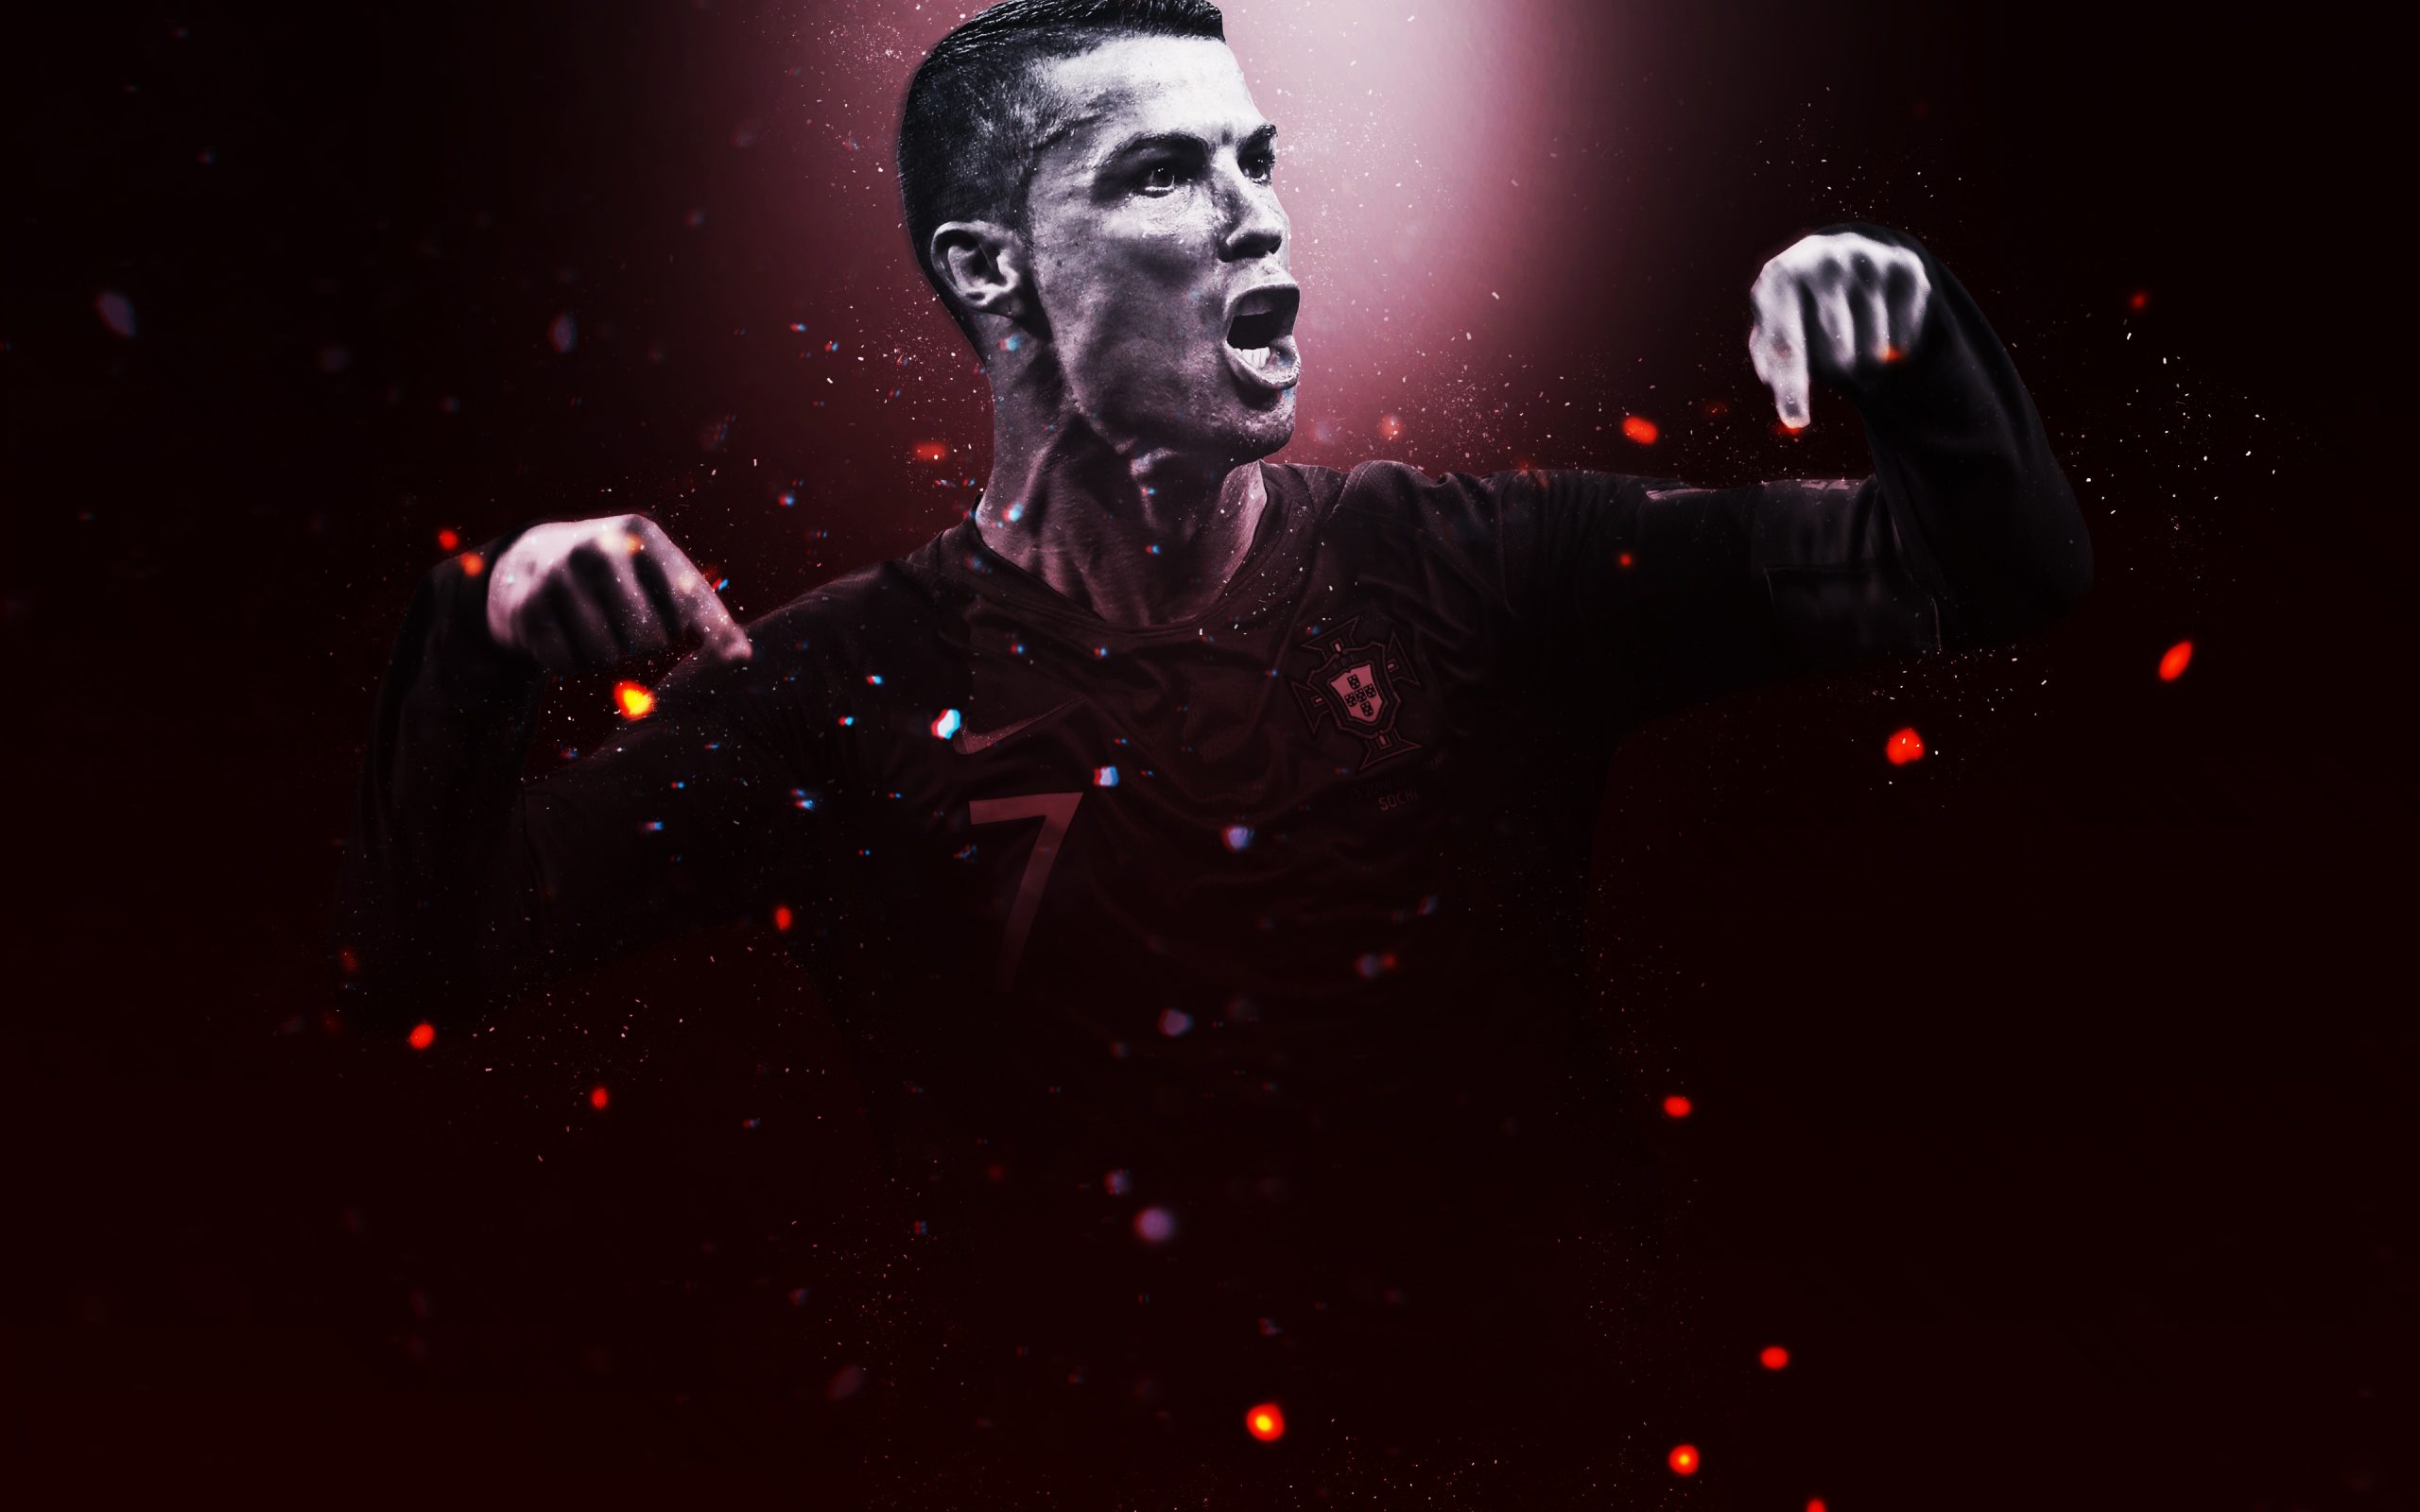 Chia sẻ 100 hình nền đẹp của Cristiano Ronaldo full HD - [Kích thước hình ảnh: 2560x1600 px]